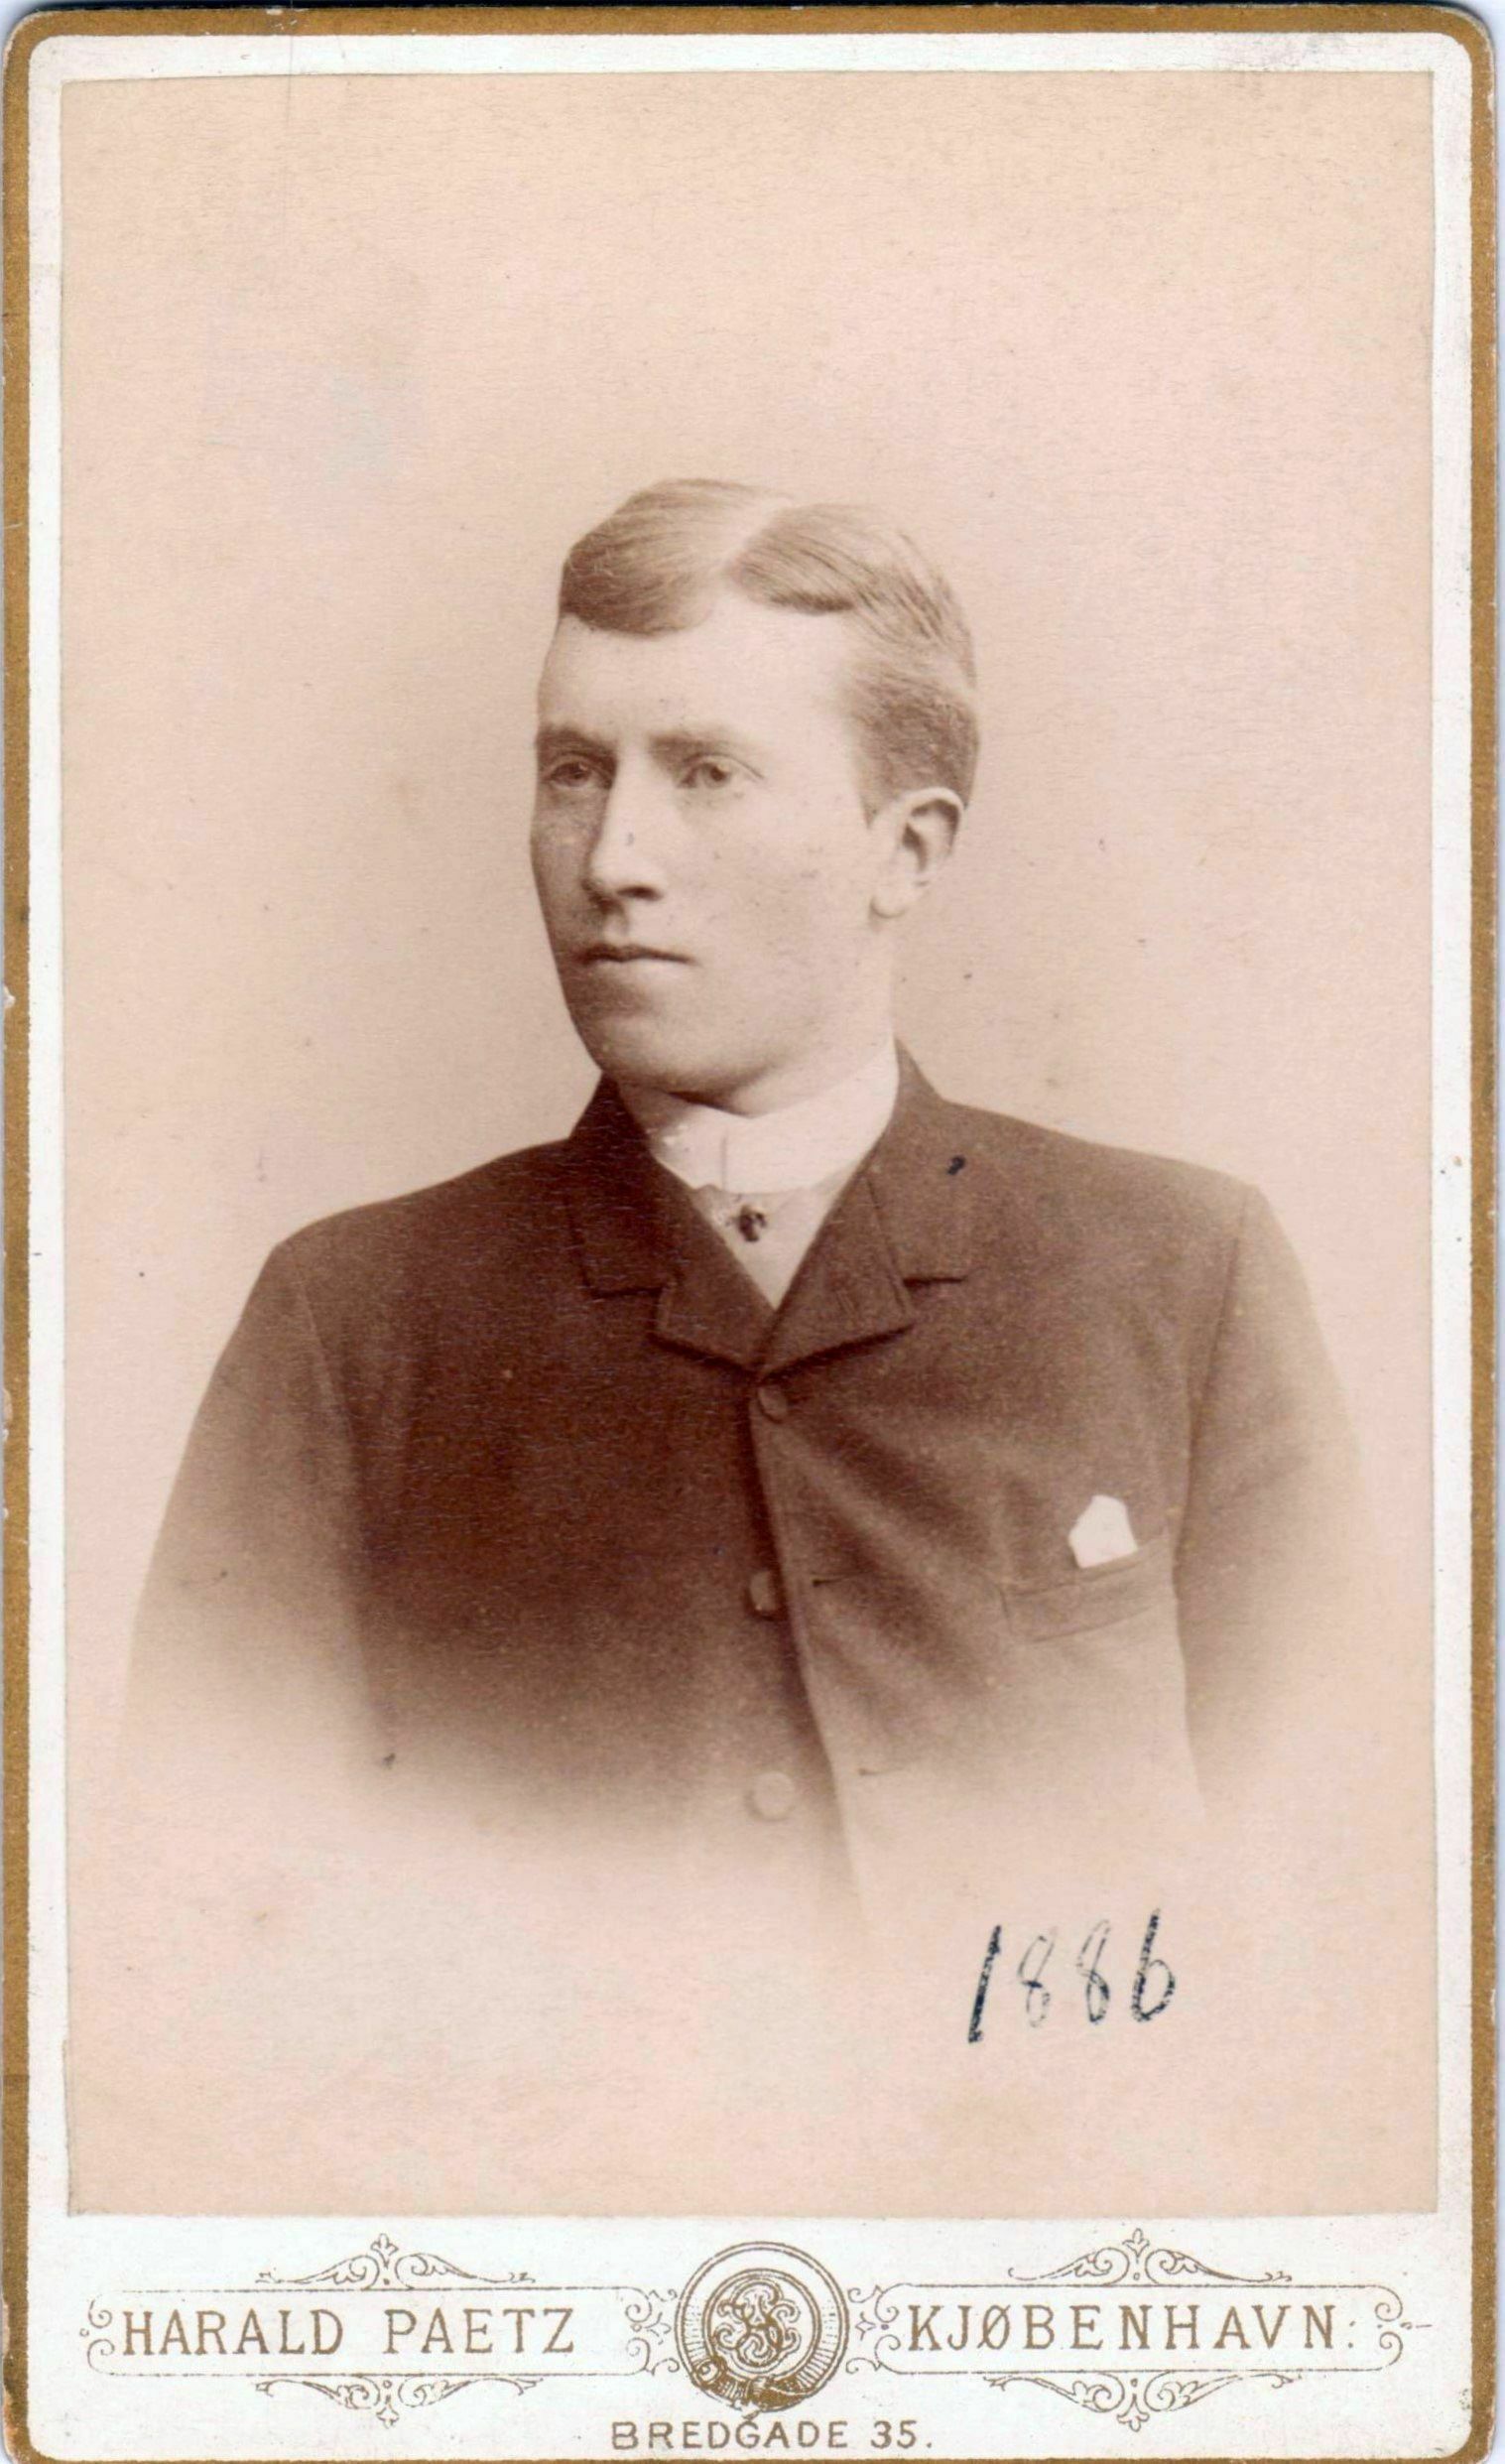 75.33 Oscar Borch f. 13.2.1866, søn af G.F Borch. Fotograf Harald Paetz, Bredgade 35, København 1865-1895